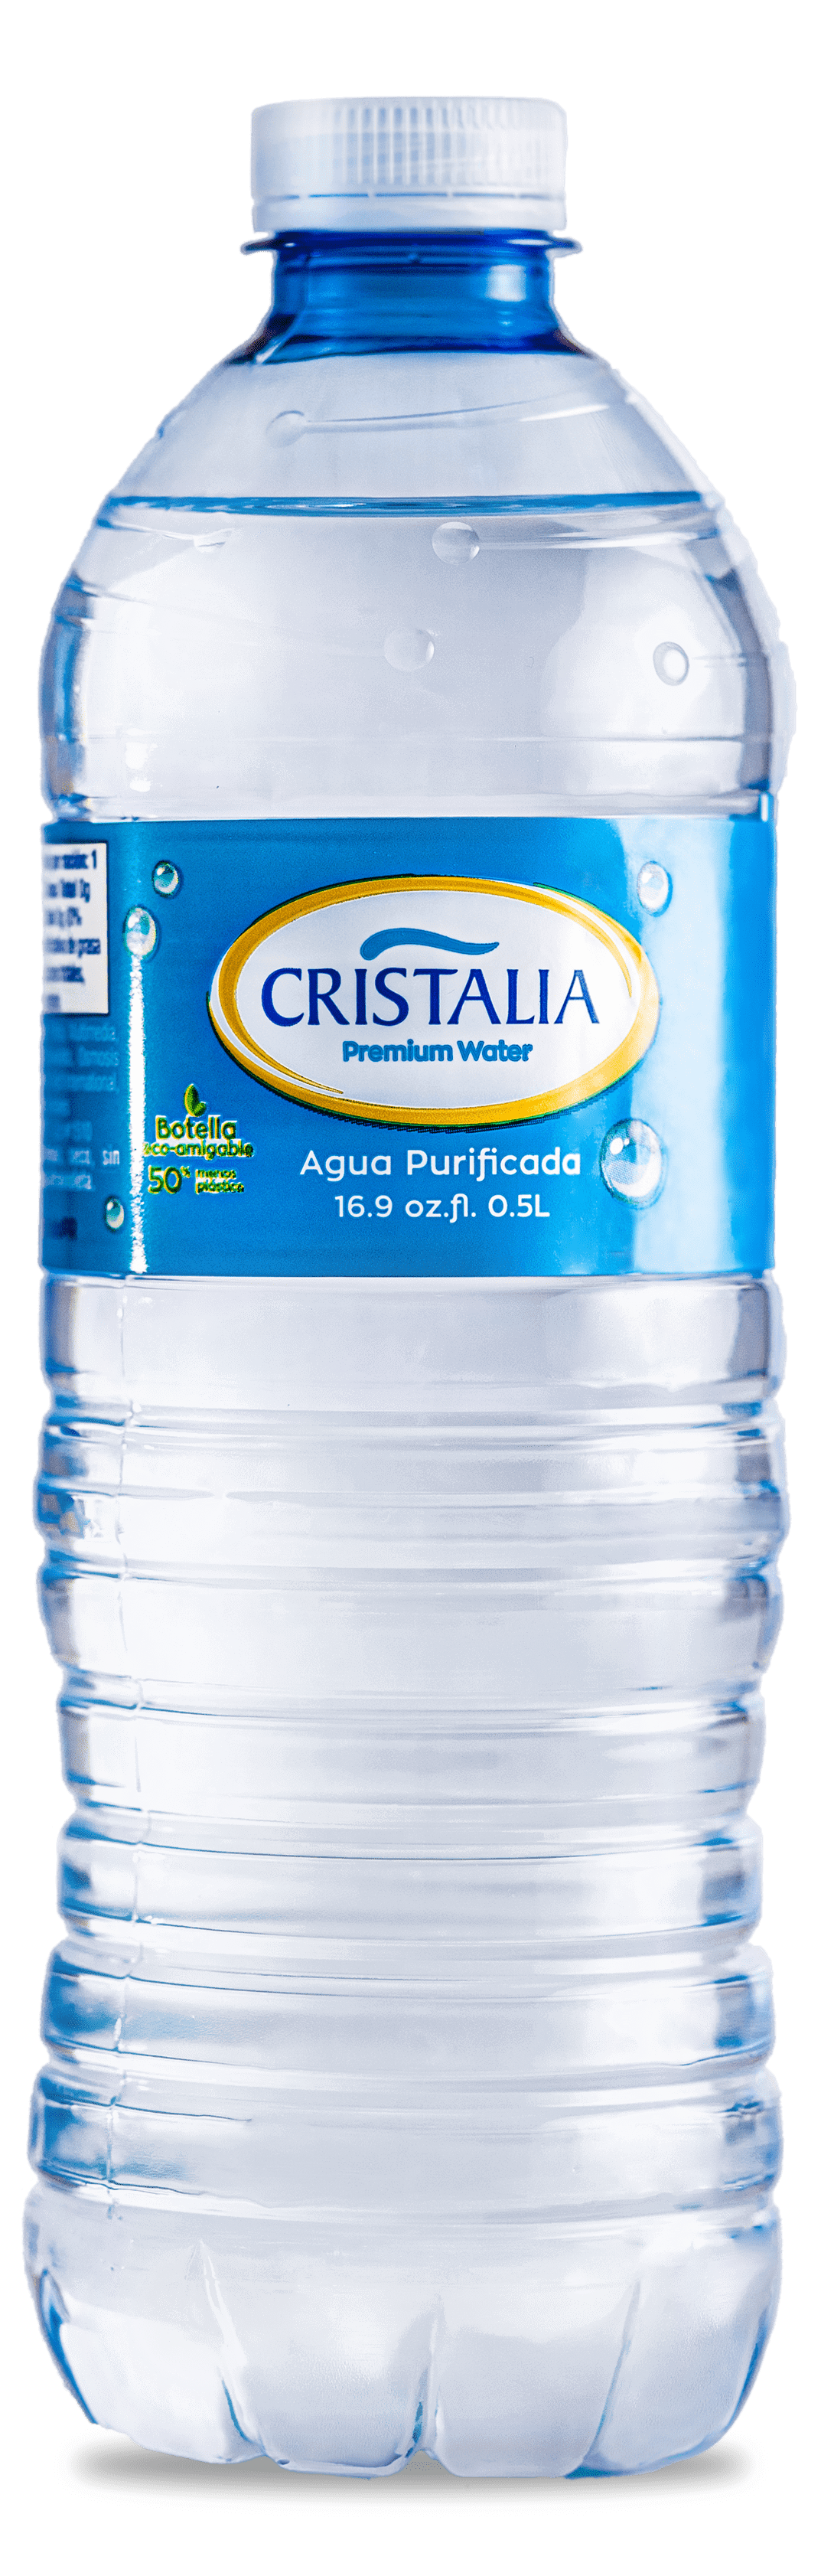 Premium Water Cristalia